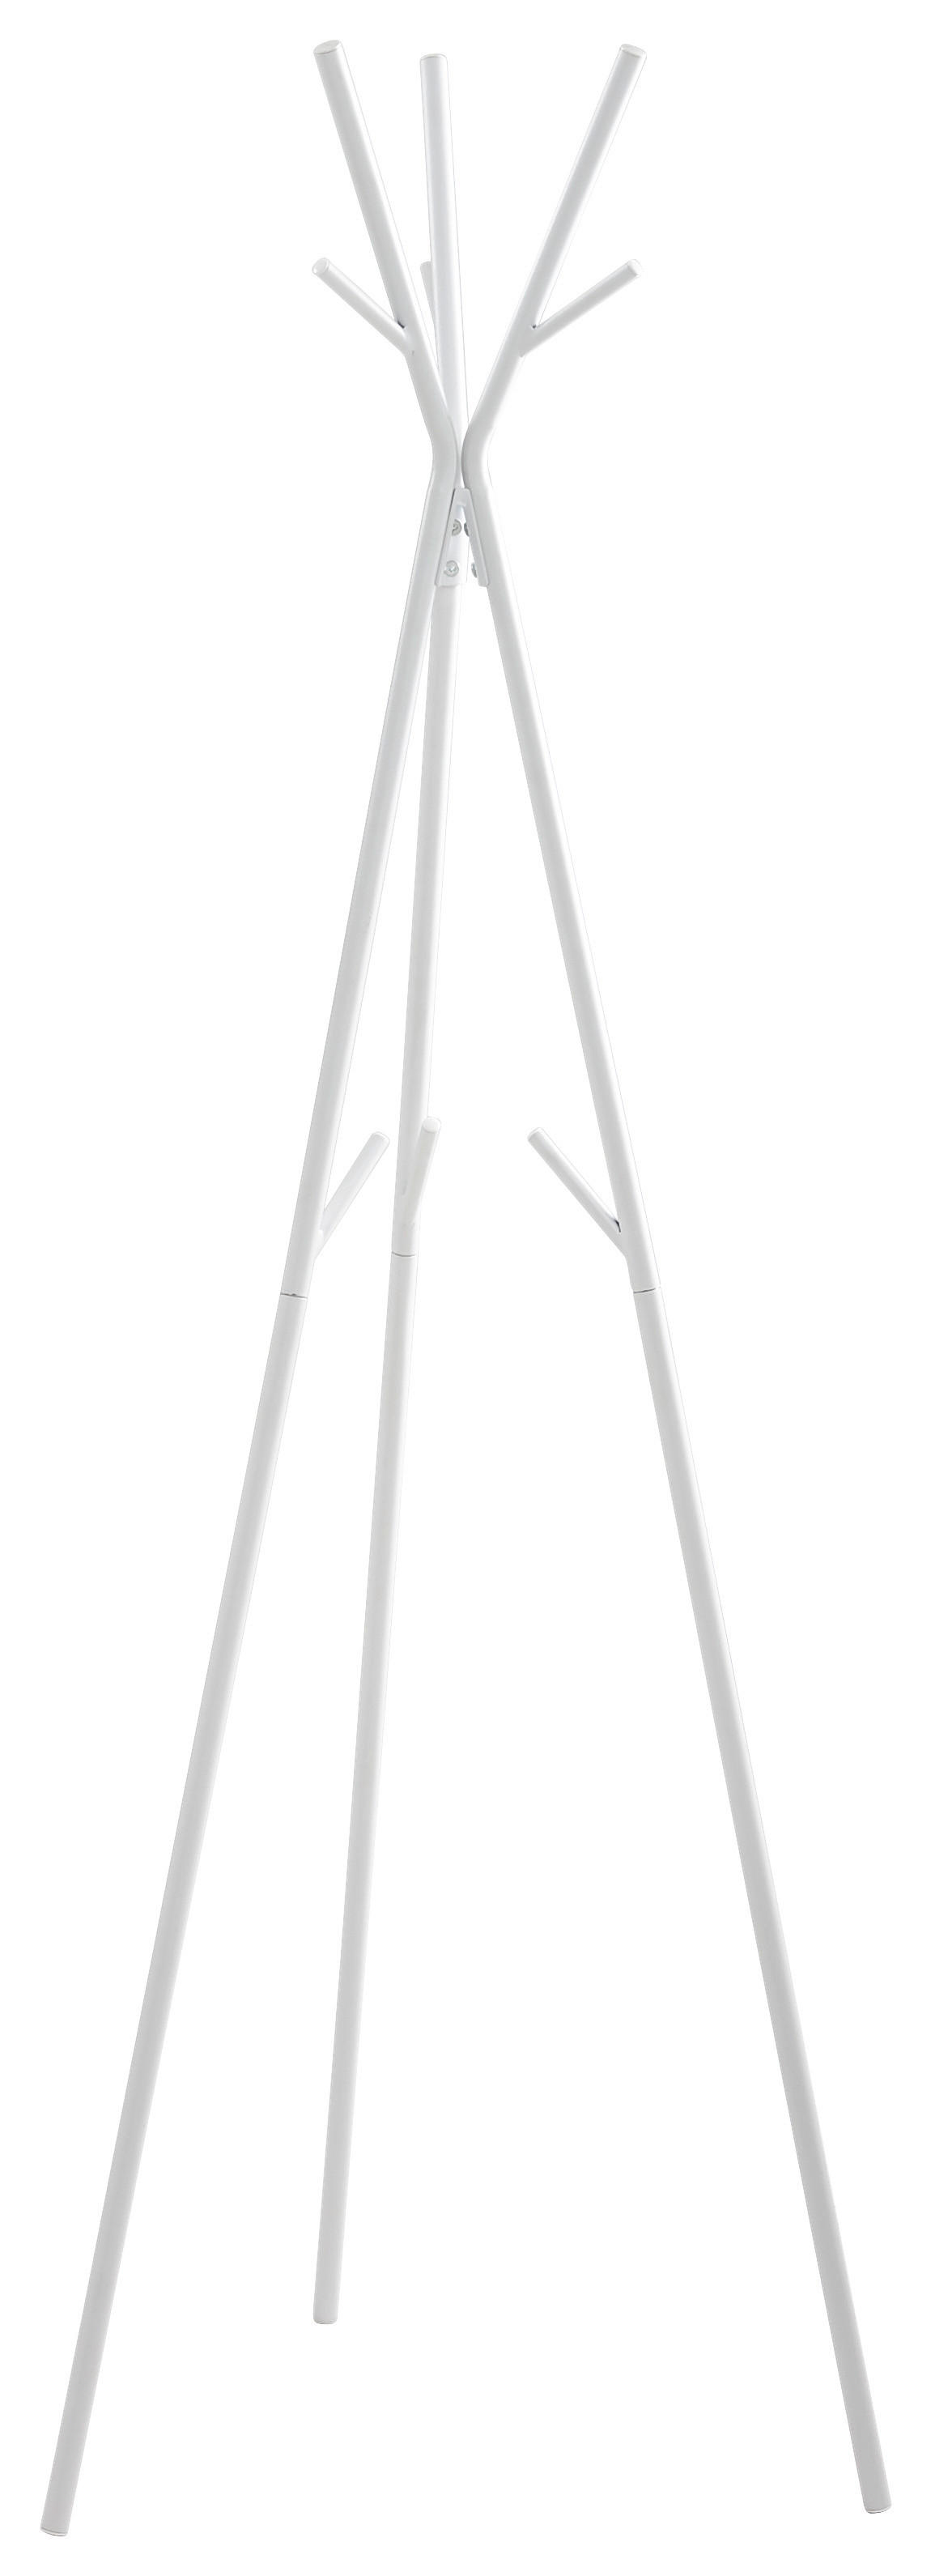 KLEIDERSTÄNDER Weiß  - Weiß, Design, Metall (50/171/50cm) - Carryhome